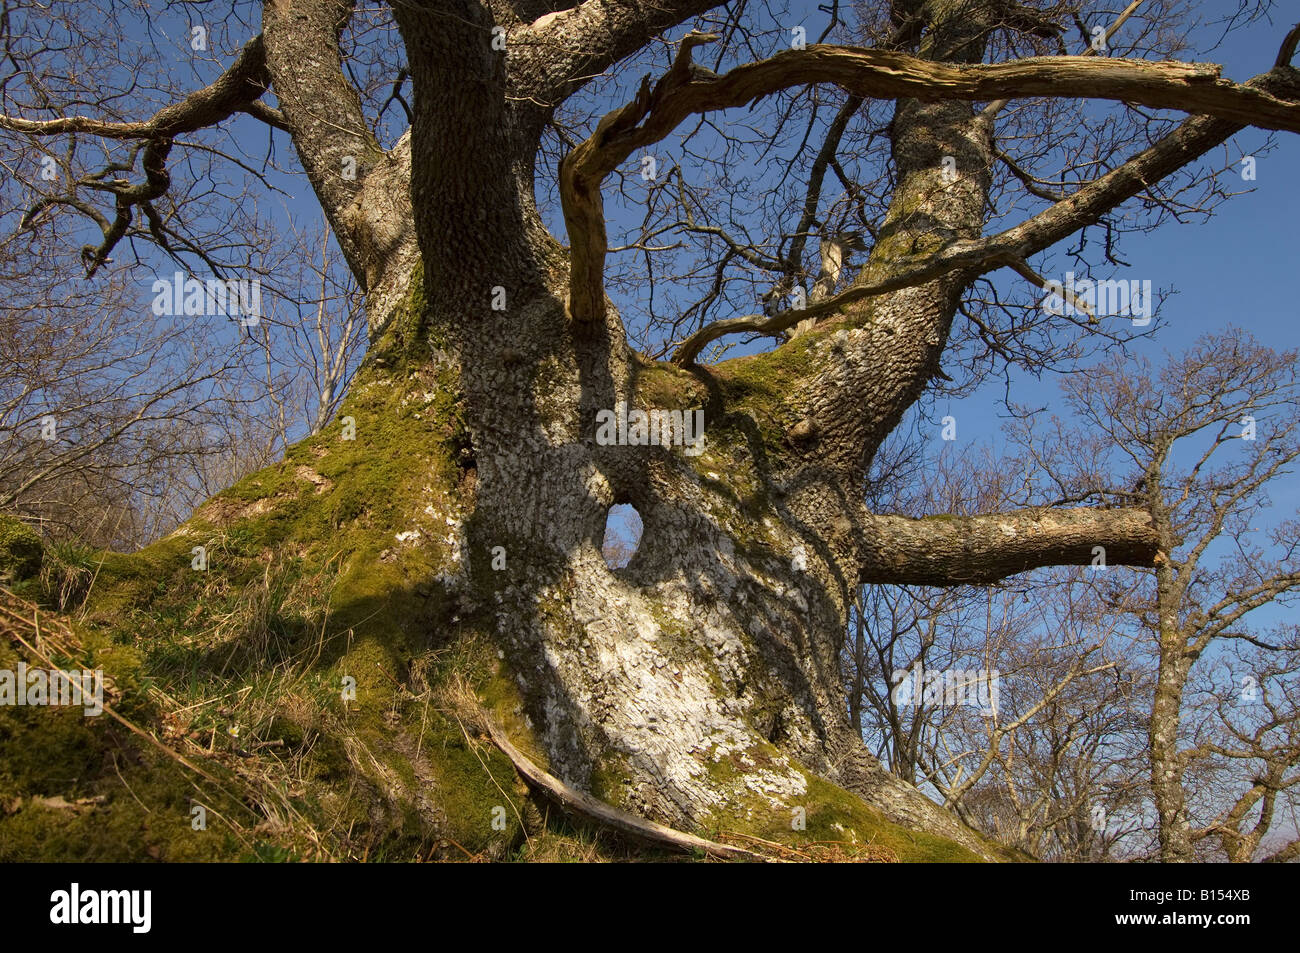 Arbre de chêne formes fantastiques avec split et creux tronc principal au début du printemps bois près de Killin Perthshire Scotland UK Banque D'Images